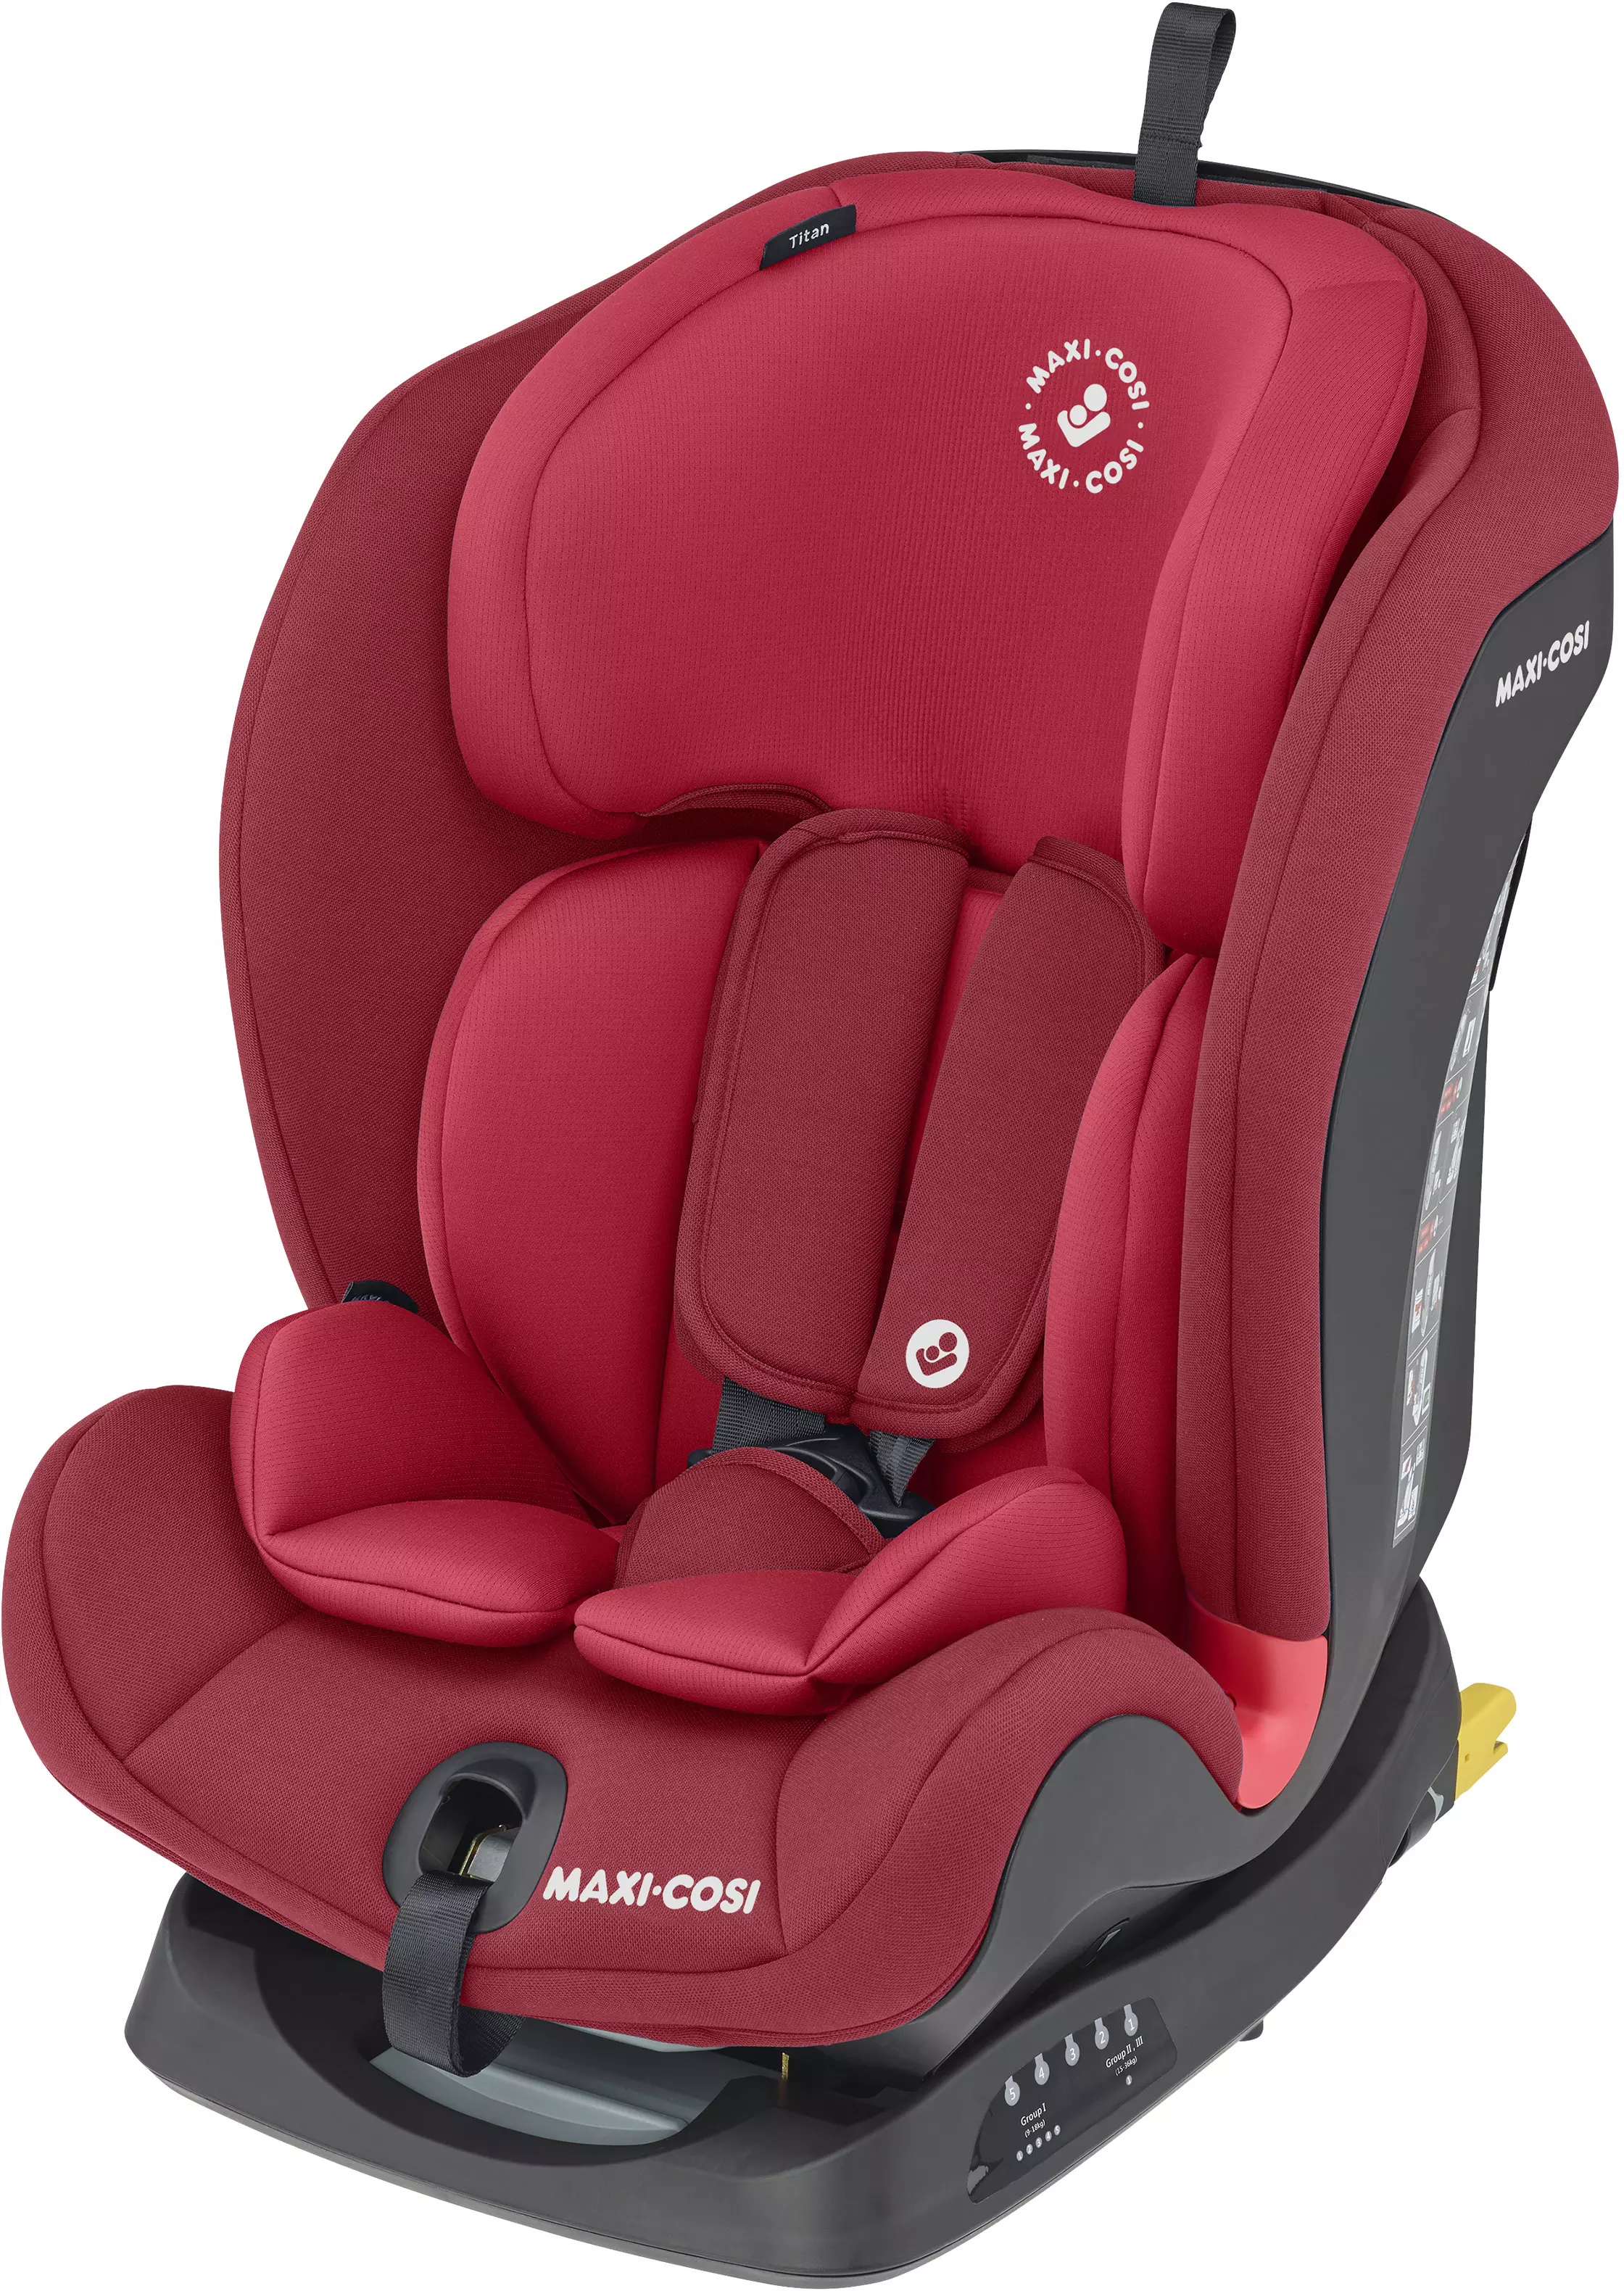 Maxi-Cosi Titan Child Car Seat with 